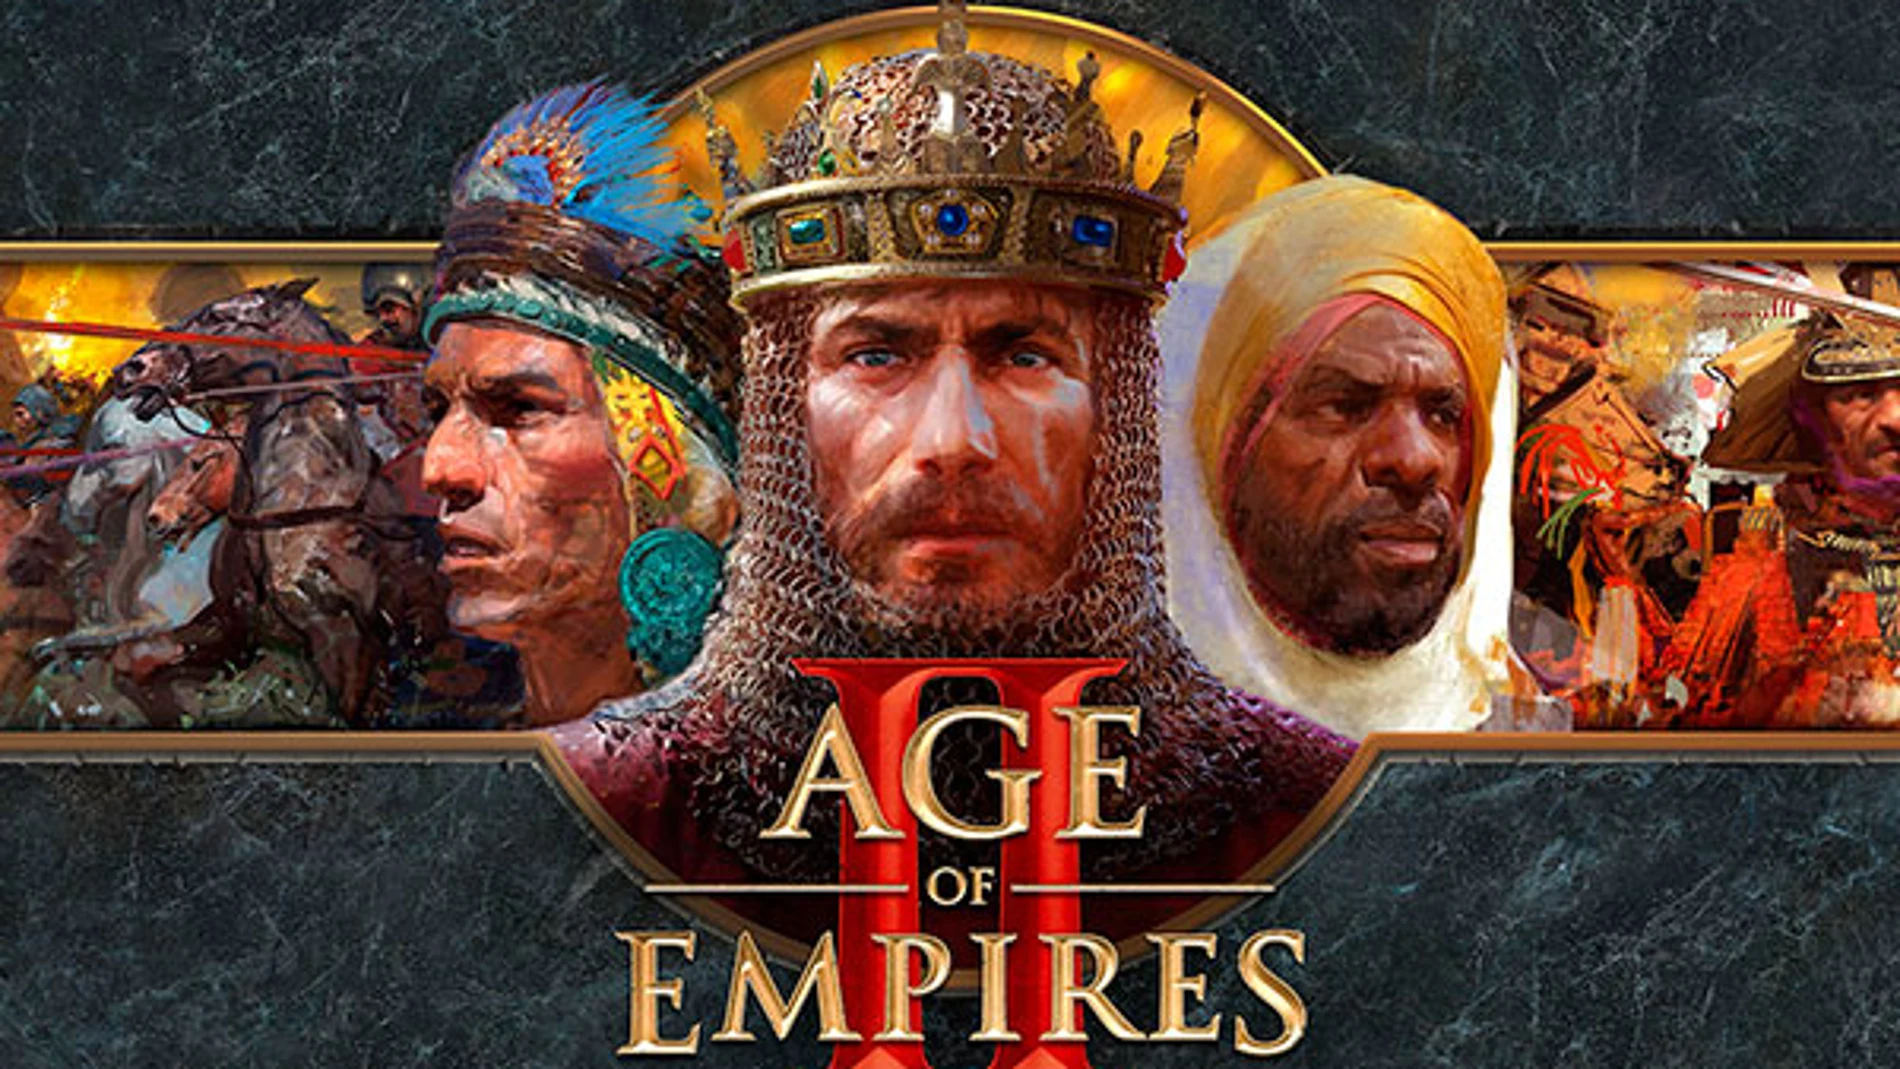 La edición definitiva del clásico "Age of Empires II".